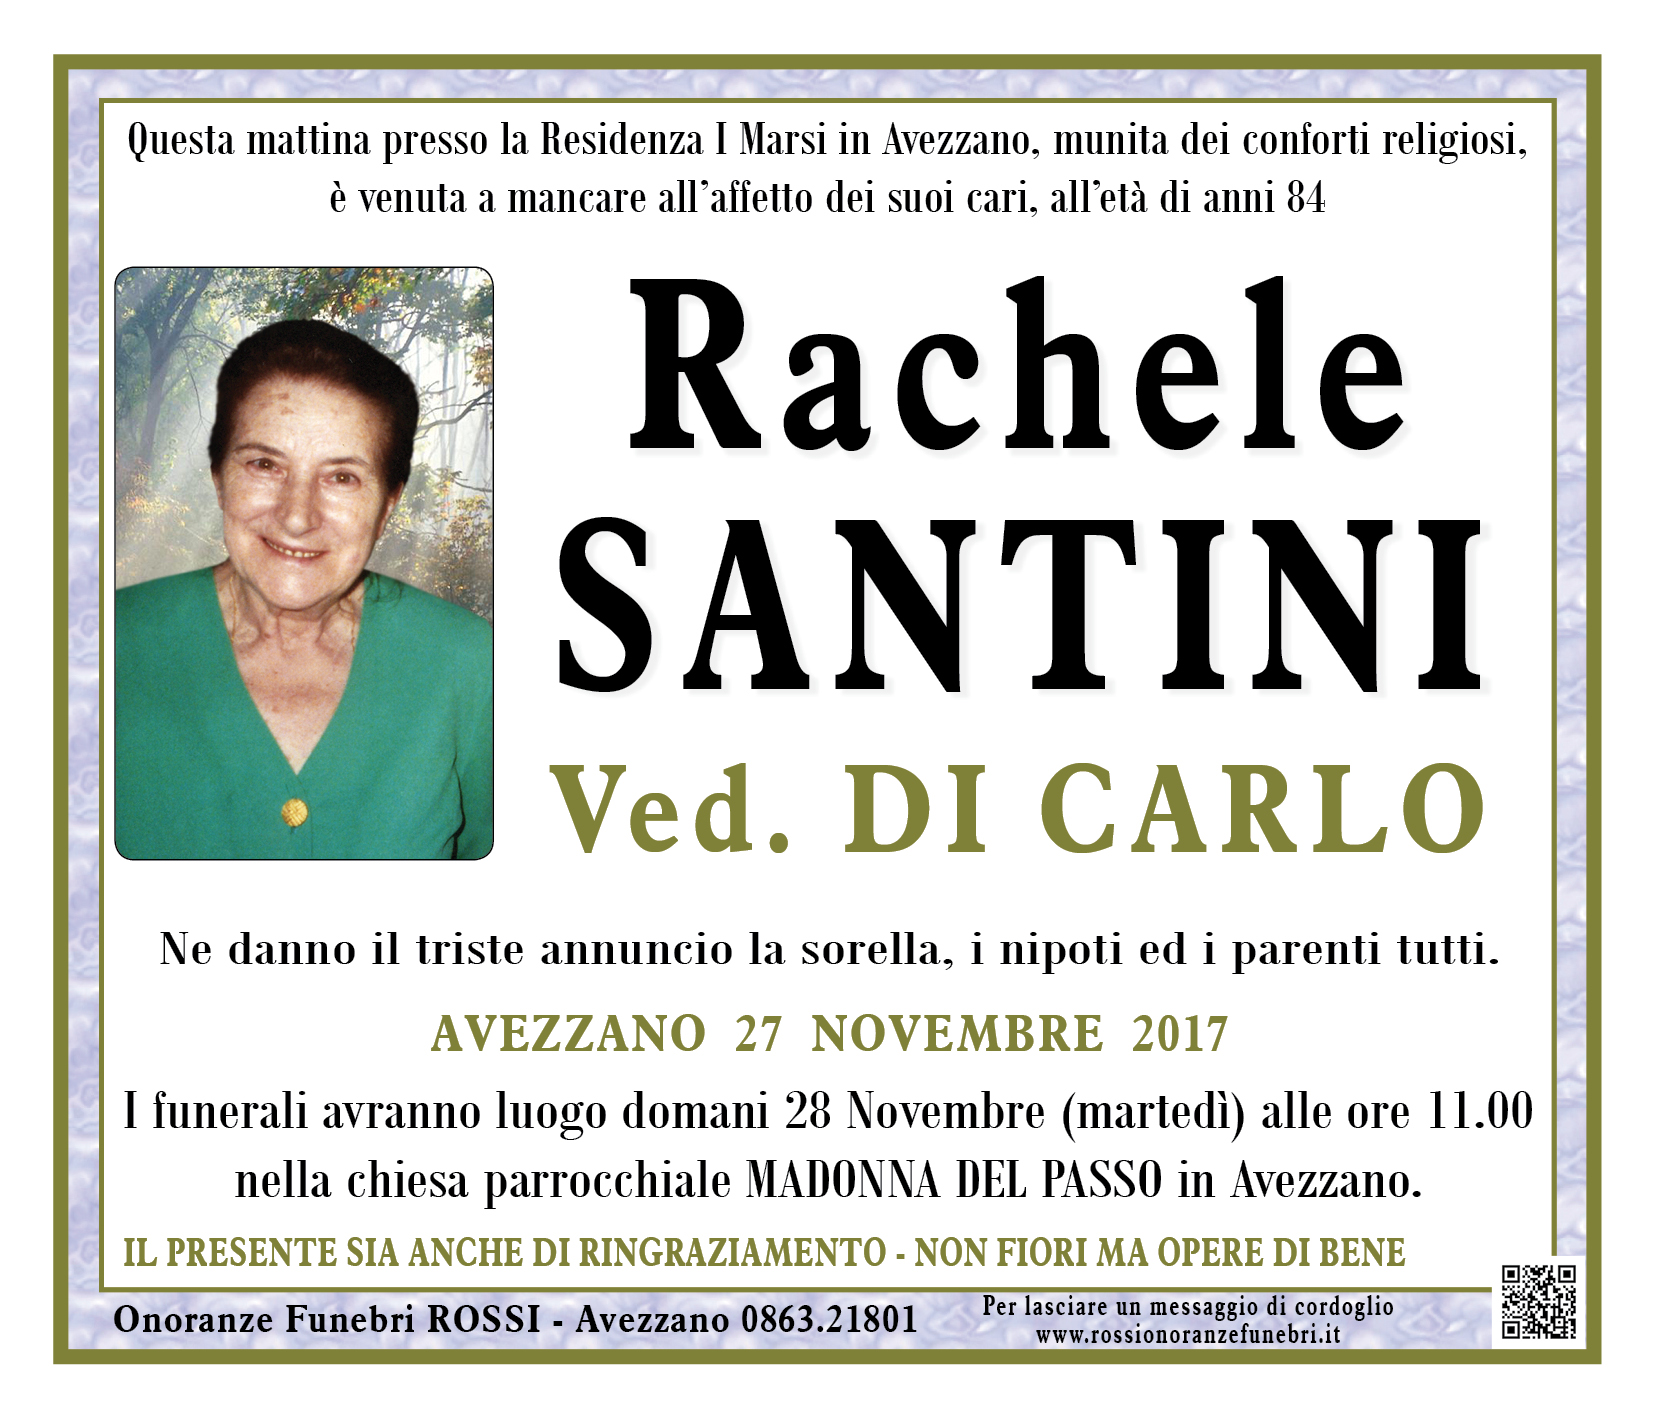 Rachele Santini